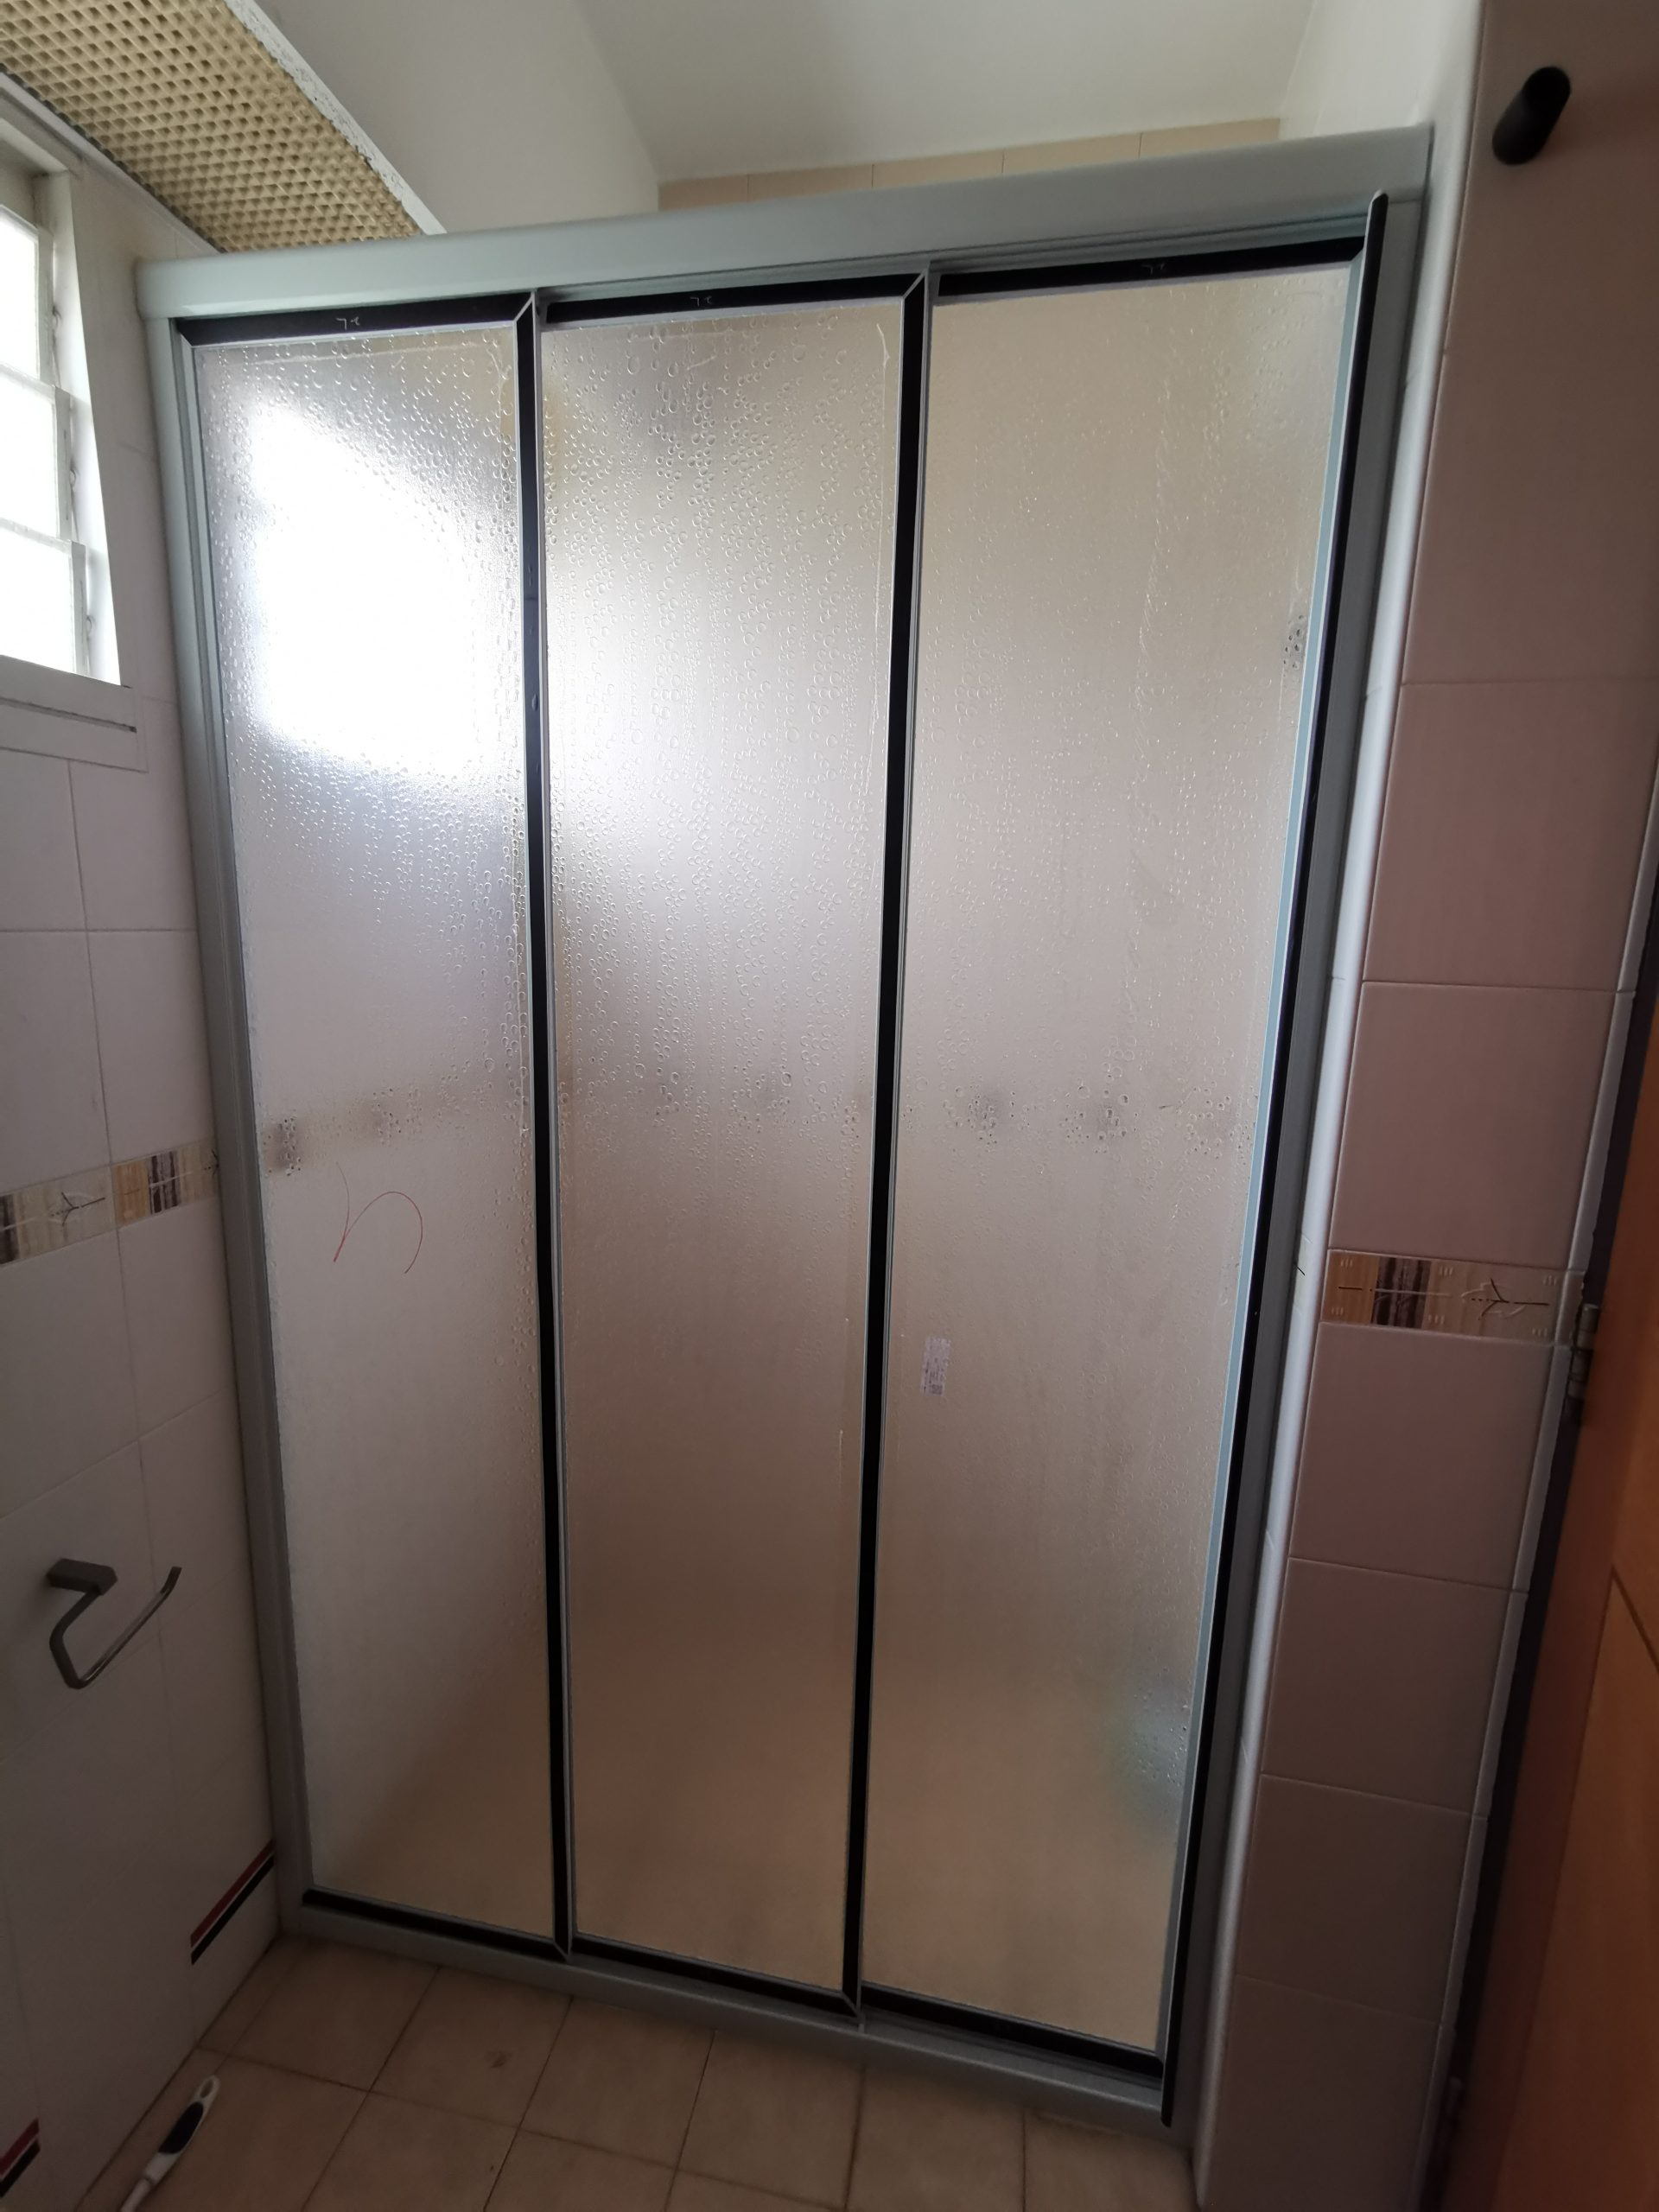 Aluminium Sliding Shower Screen (Wall to Wall / PVC) | Toilet ...